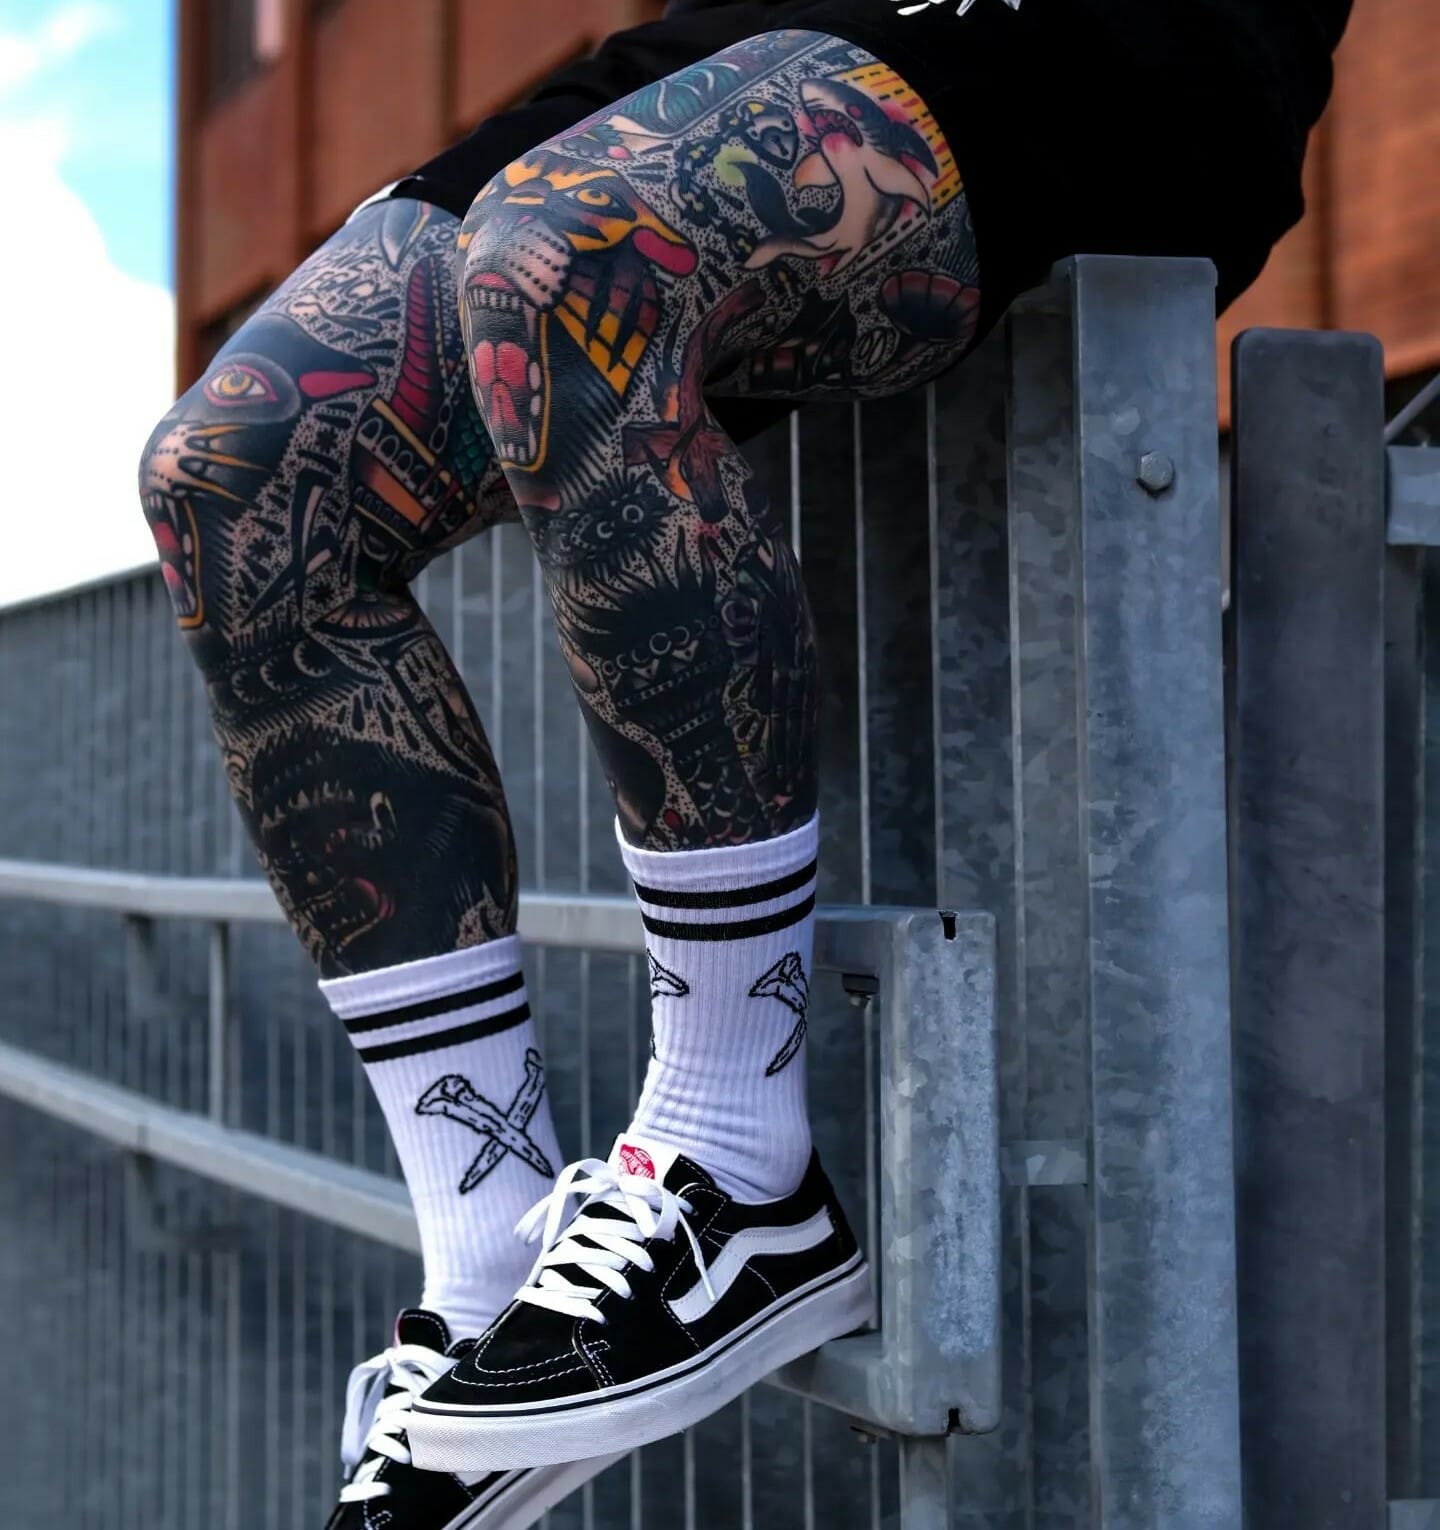 Top 85 Best Leg Sleeve Tattoo Ideas  2021 Inspiration Guide